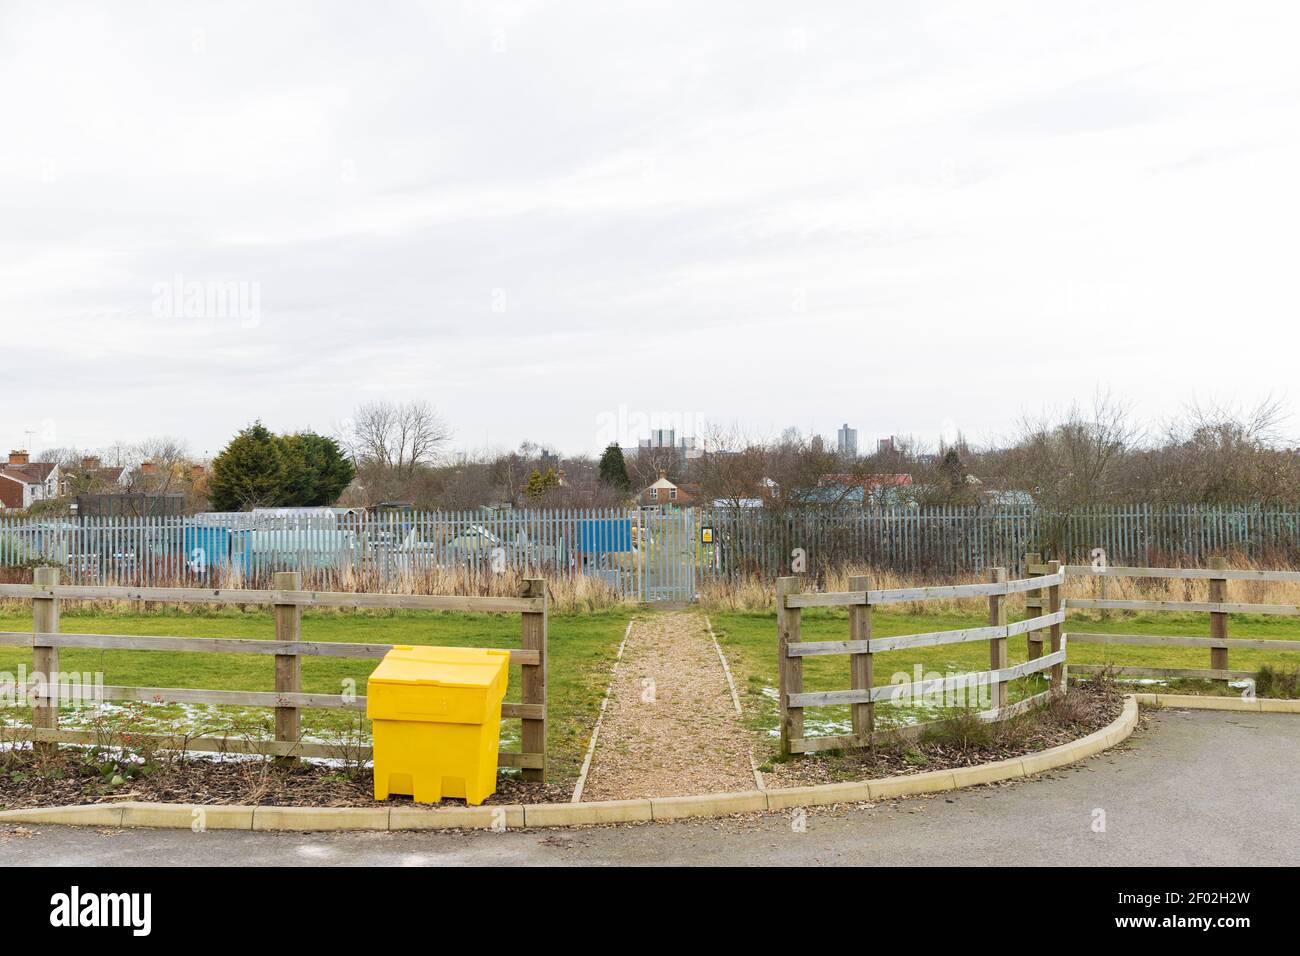 Zone de pelouse, porte d'accès aux allotements, clôture en acier, hangars, et de grands bâtiments à l'Université de Leicester, montrant le centre-ville de Leicester horizon. Banque D'Images